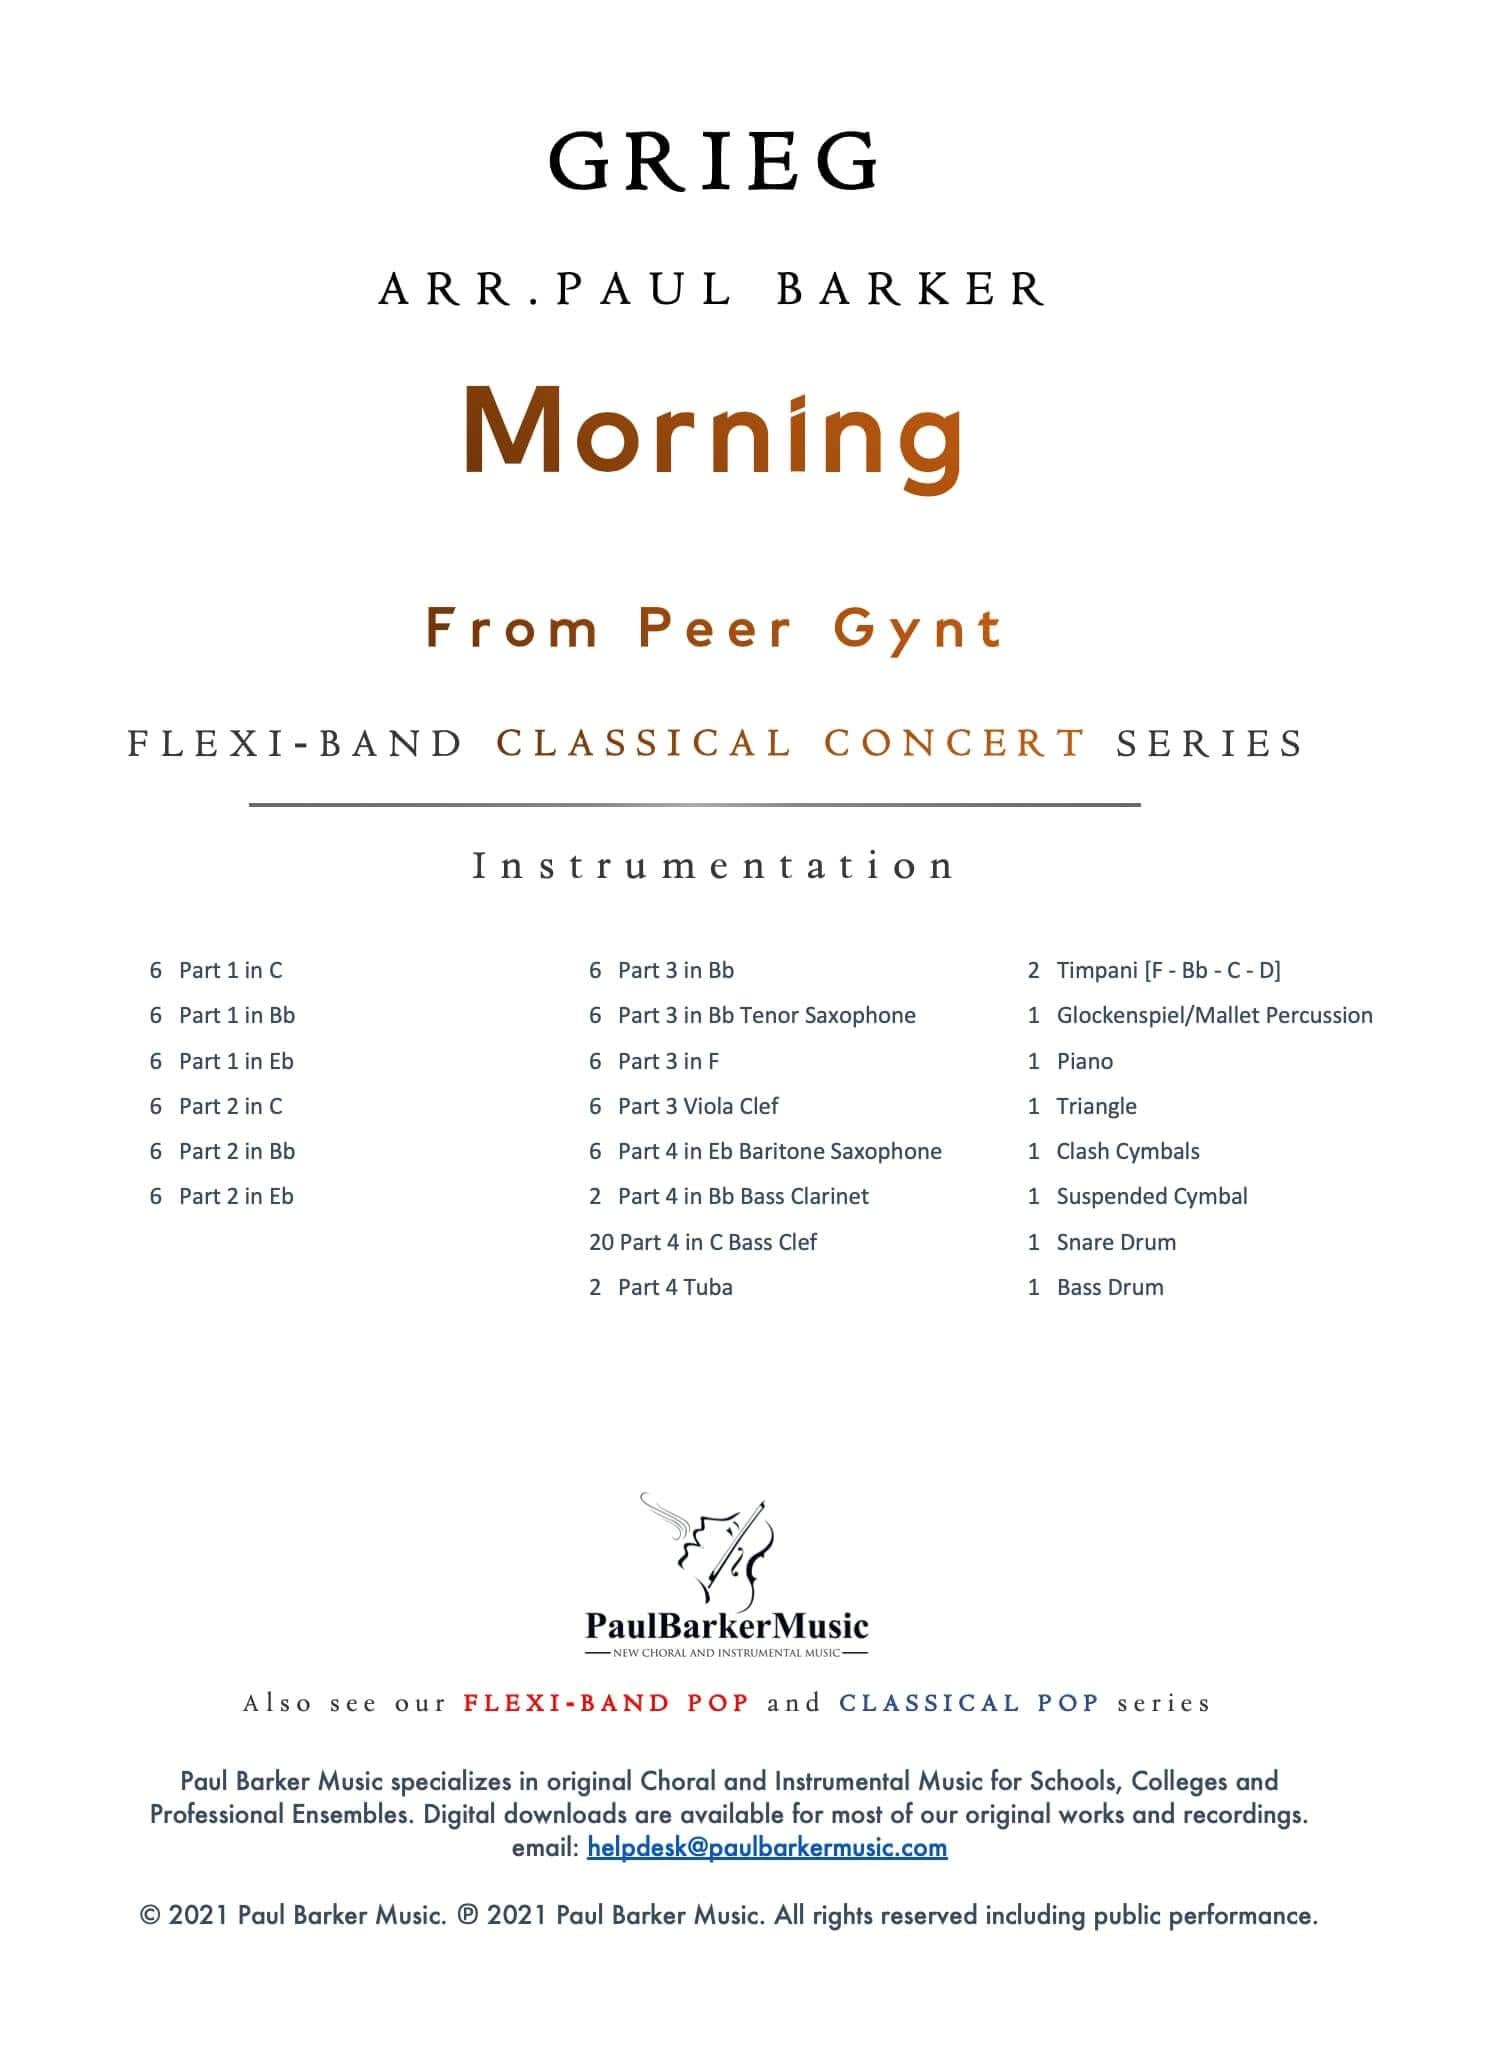 Morning from Peer Gynt - Paul Barker Music 